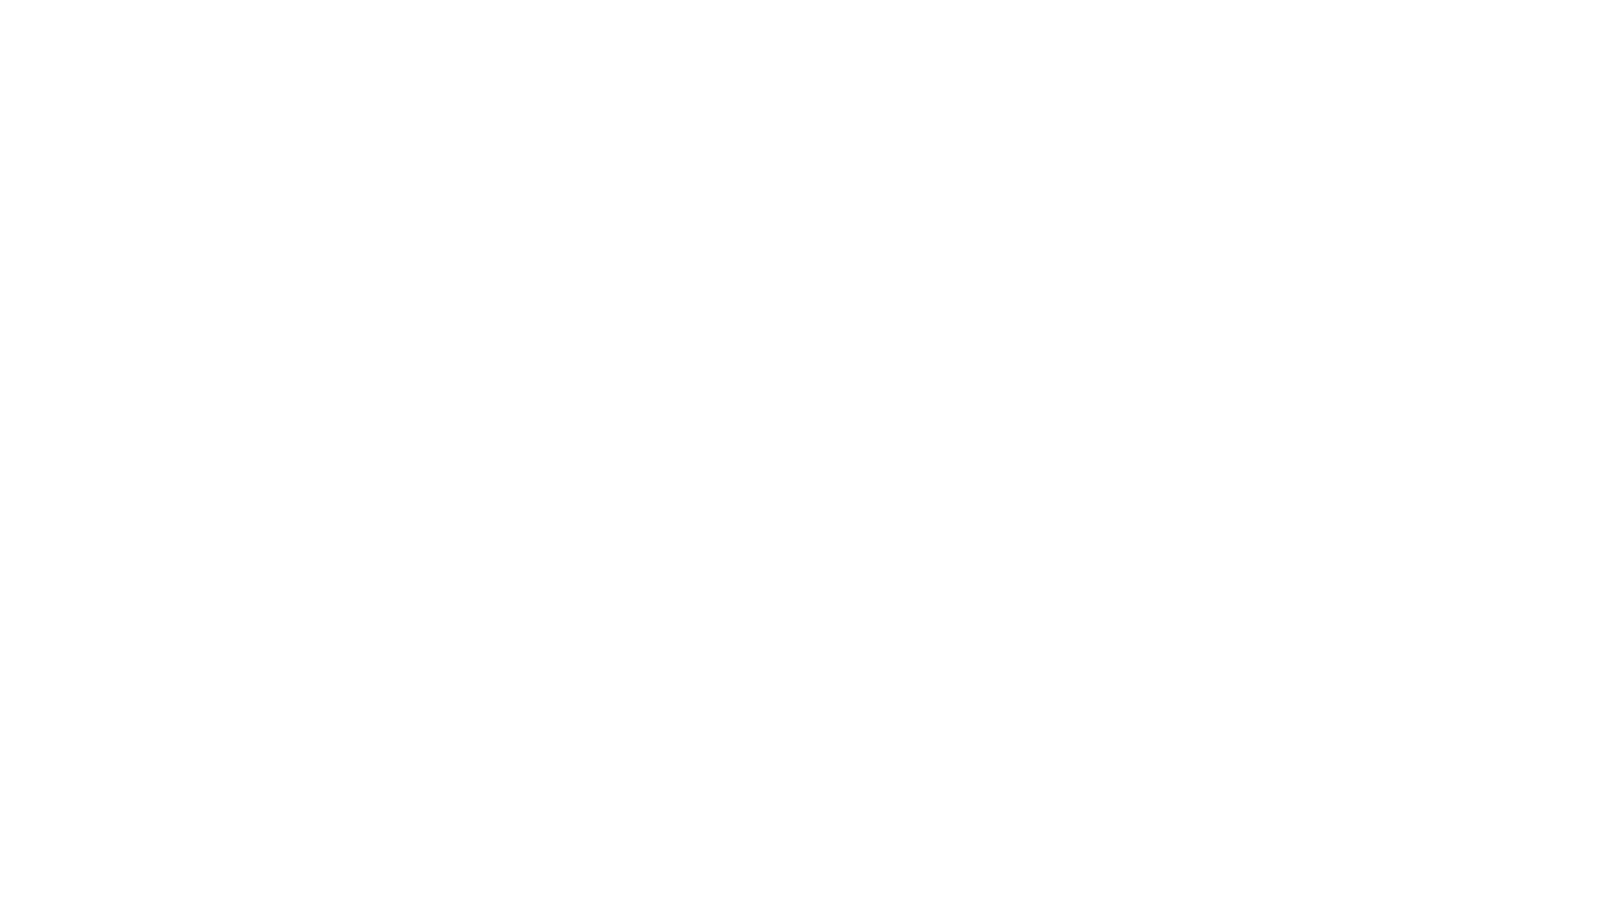 Revivez le concert hommage à Basquiat que Gims a donné à la Fondation !
Dans le cadre de l'exposition "Basquiat x Warhol, à quatre mains", l'auteur-compositeur-interprète engagé et passionné GIMS a souhaité rendre hommage au peintre Jean-Michel Basquiat. 

Extraits du concert du 27 mai 2023.

Relive the Gims Basquiat tribute concert at the Fondation!
Gims, a committed and passionate singer-songwriter, payed tribute to the painter Jean-Michel Basquiat  as part of the exhibition "Basquiat x Warhol. Painting Four Hands."

Extracts from the concert on 27 May 2023.


Facebook : https://www.facebook.com/FondationLou...
Instagram : https://www.instagram.com/fondationlv/
X : https://twitter.com/FondationLV
TikTok : https://www.tiktok.com/@fondationlv
LinkedIn : https://www.linkedin.com/company/fond...